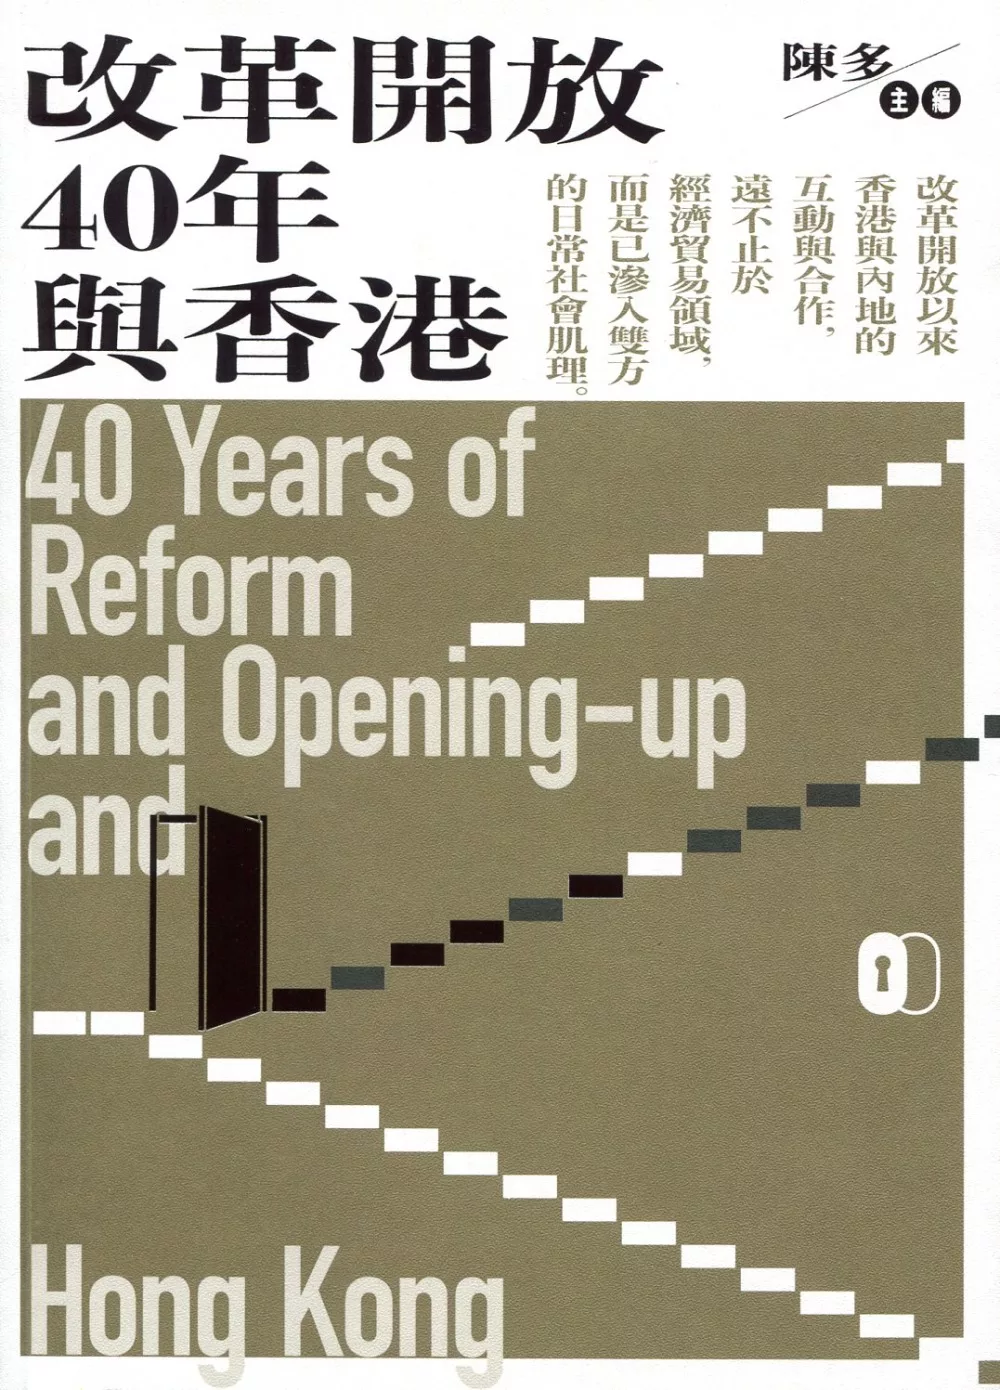 改革開放40年與香港